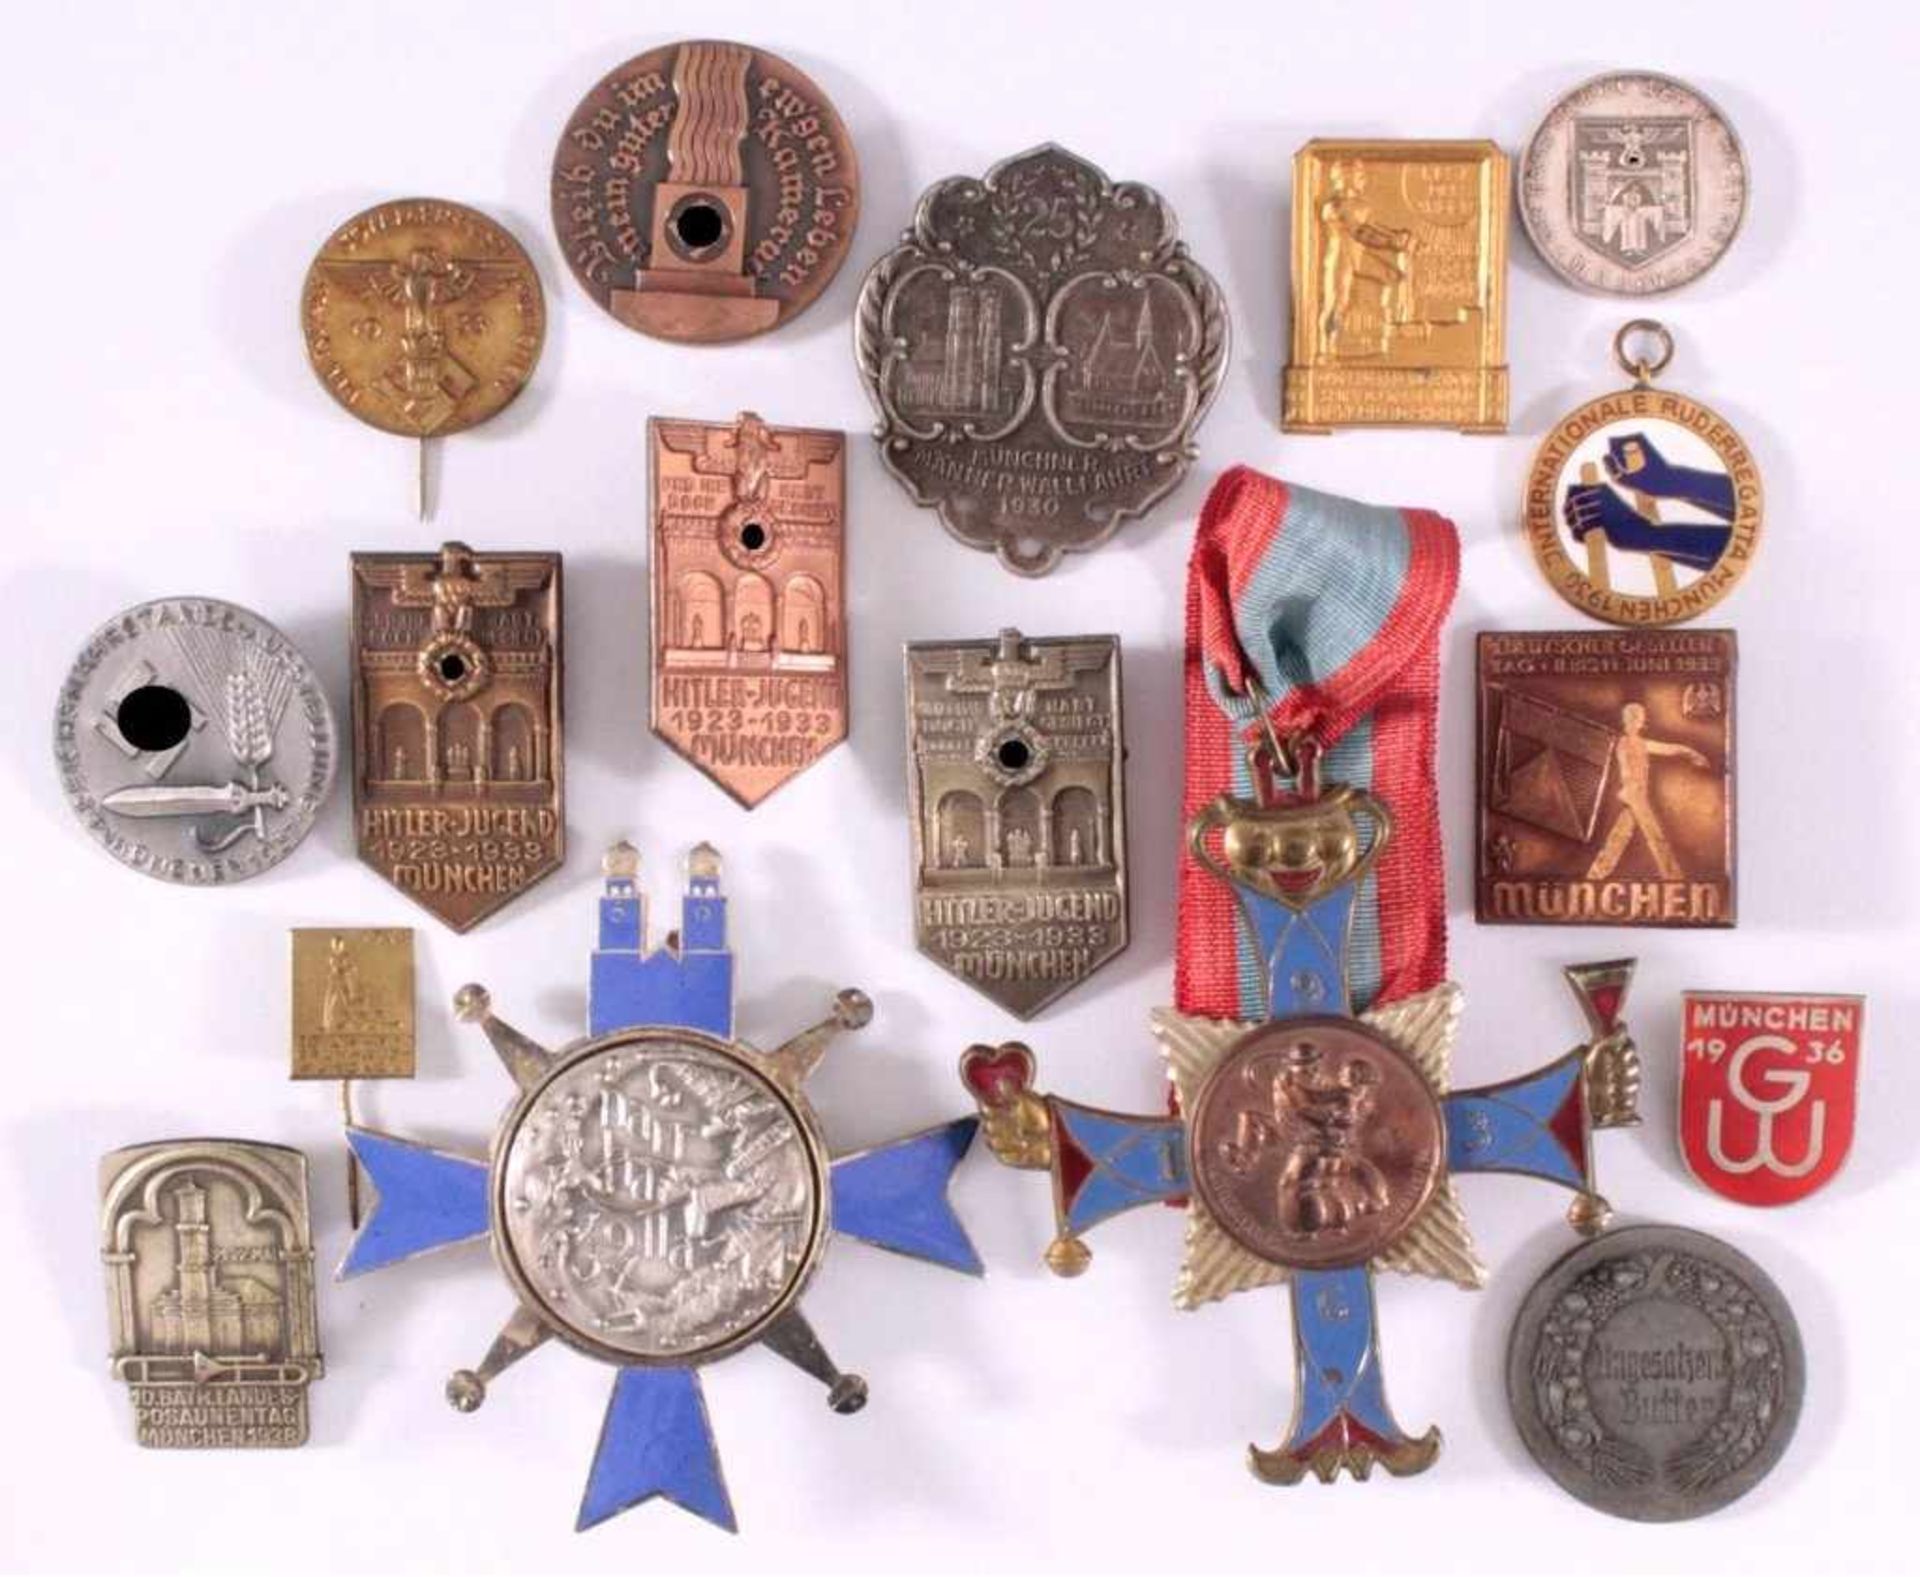 17 Tagungs- und Veranstaltungsabzeichen MünchenAus Metall, teilweise mit Emaille, in den Größen 2,